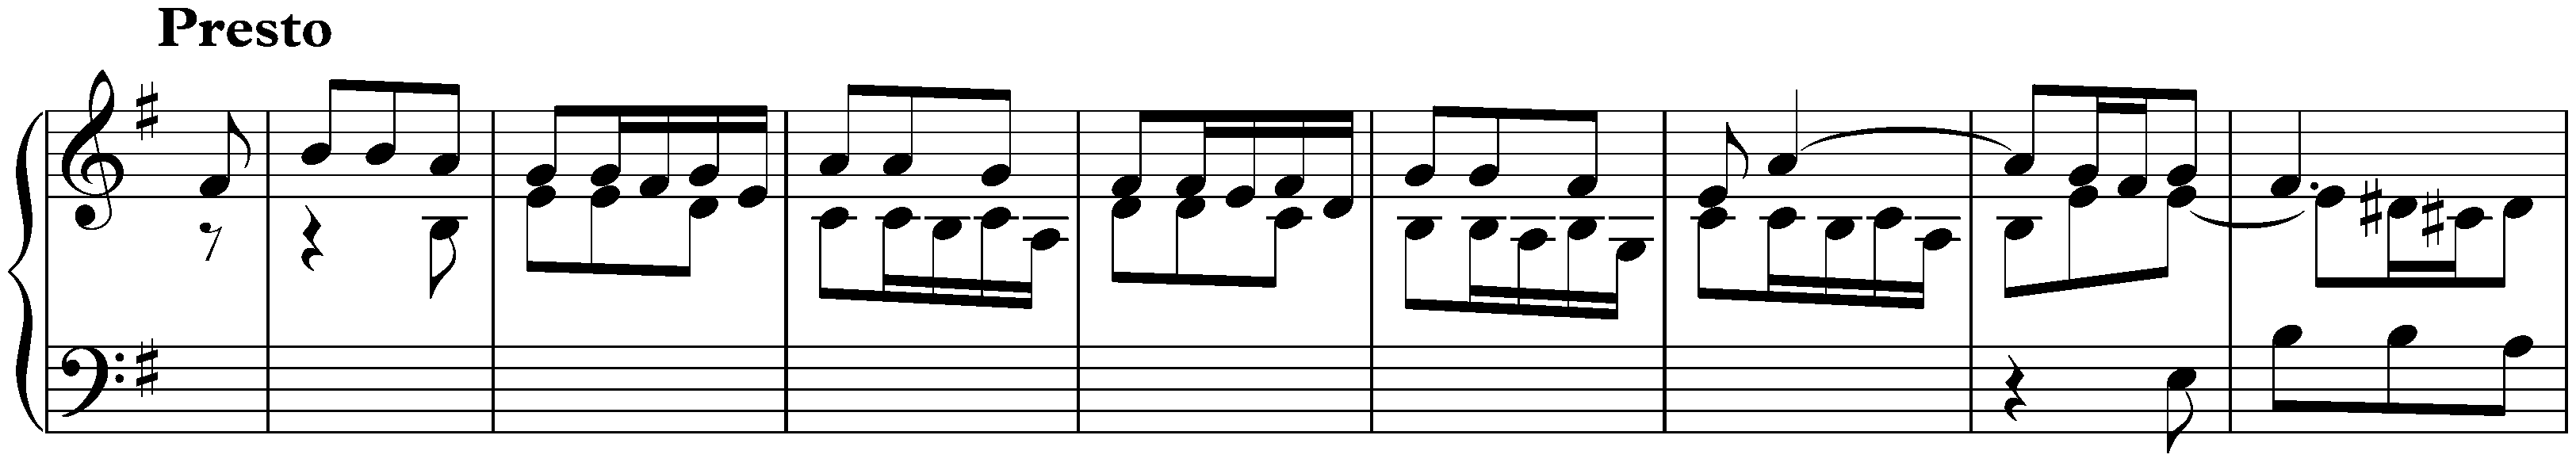 Suite in E minor, BWV 996; 1. Praeludio